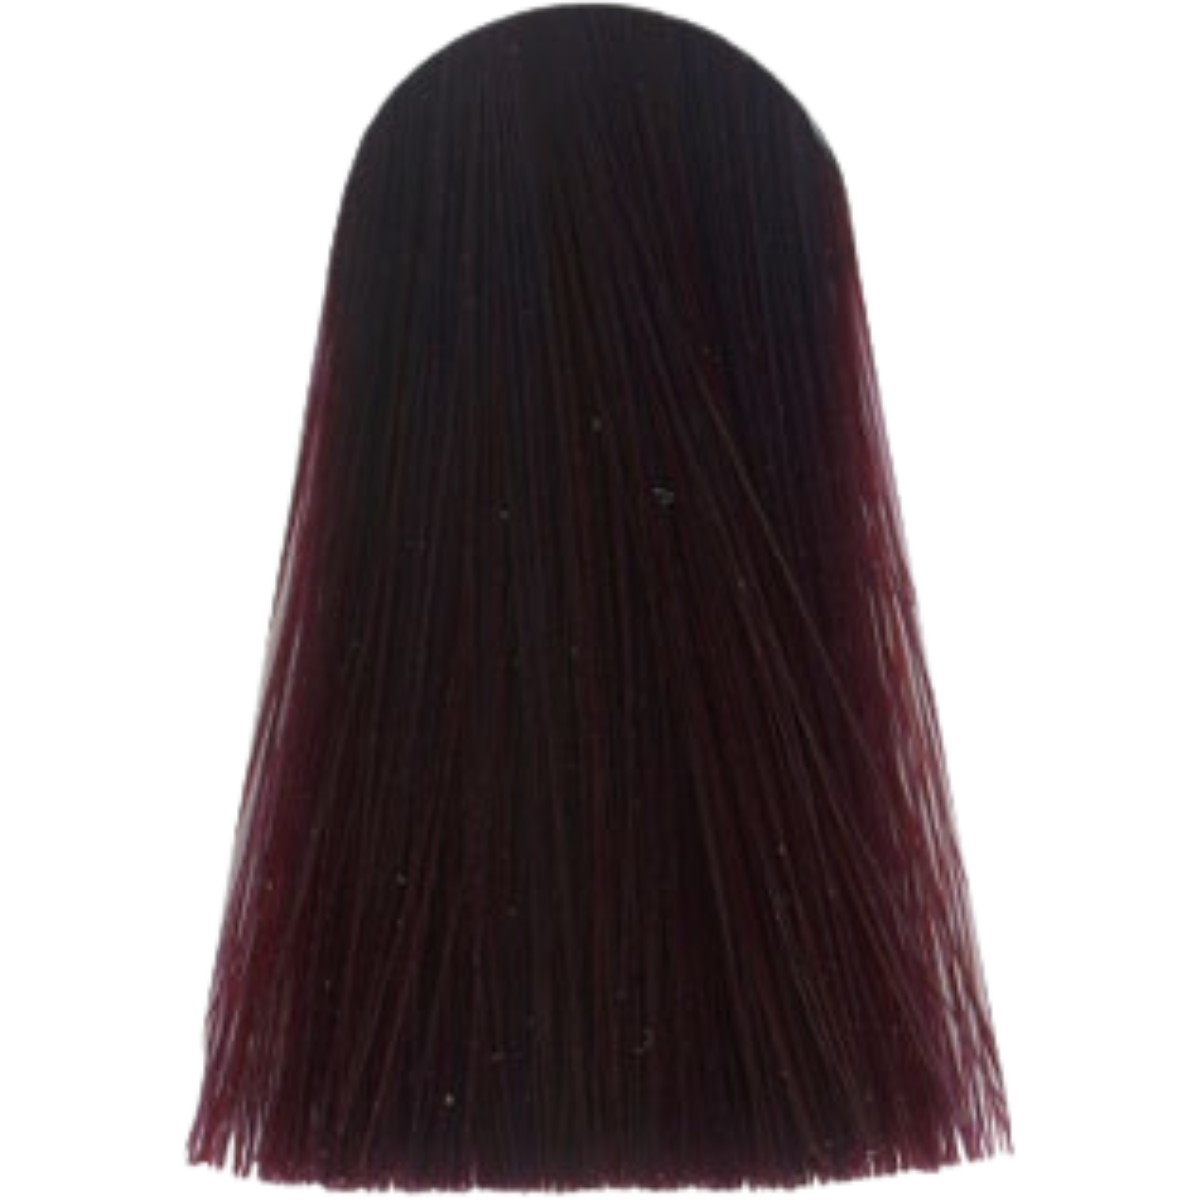 צבע לשיער 7.76 MEDIUM BLONDE VIOLET RED אינדולה INDOLA צבע לשיער 60 גרם